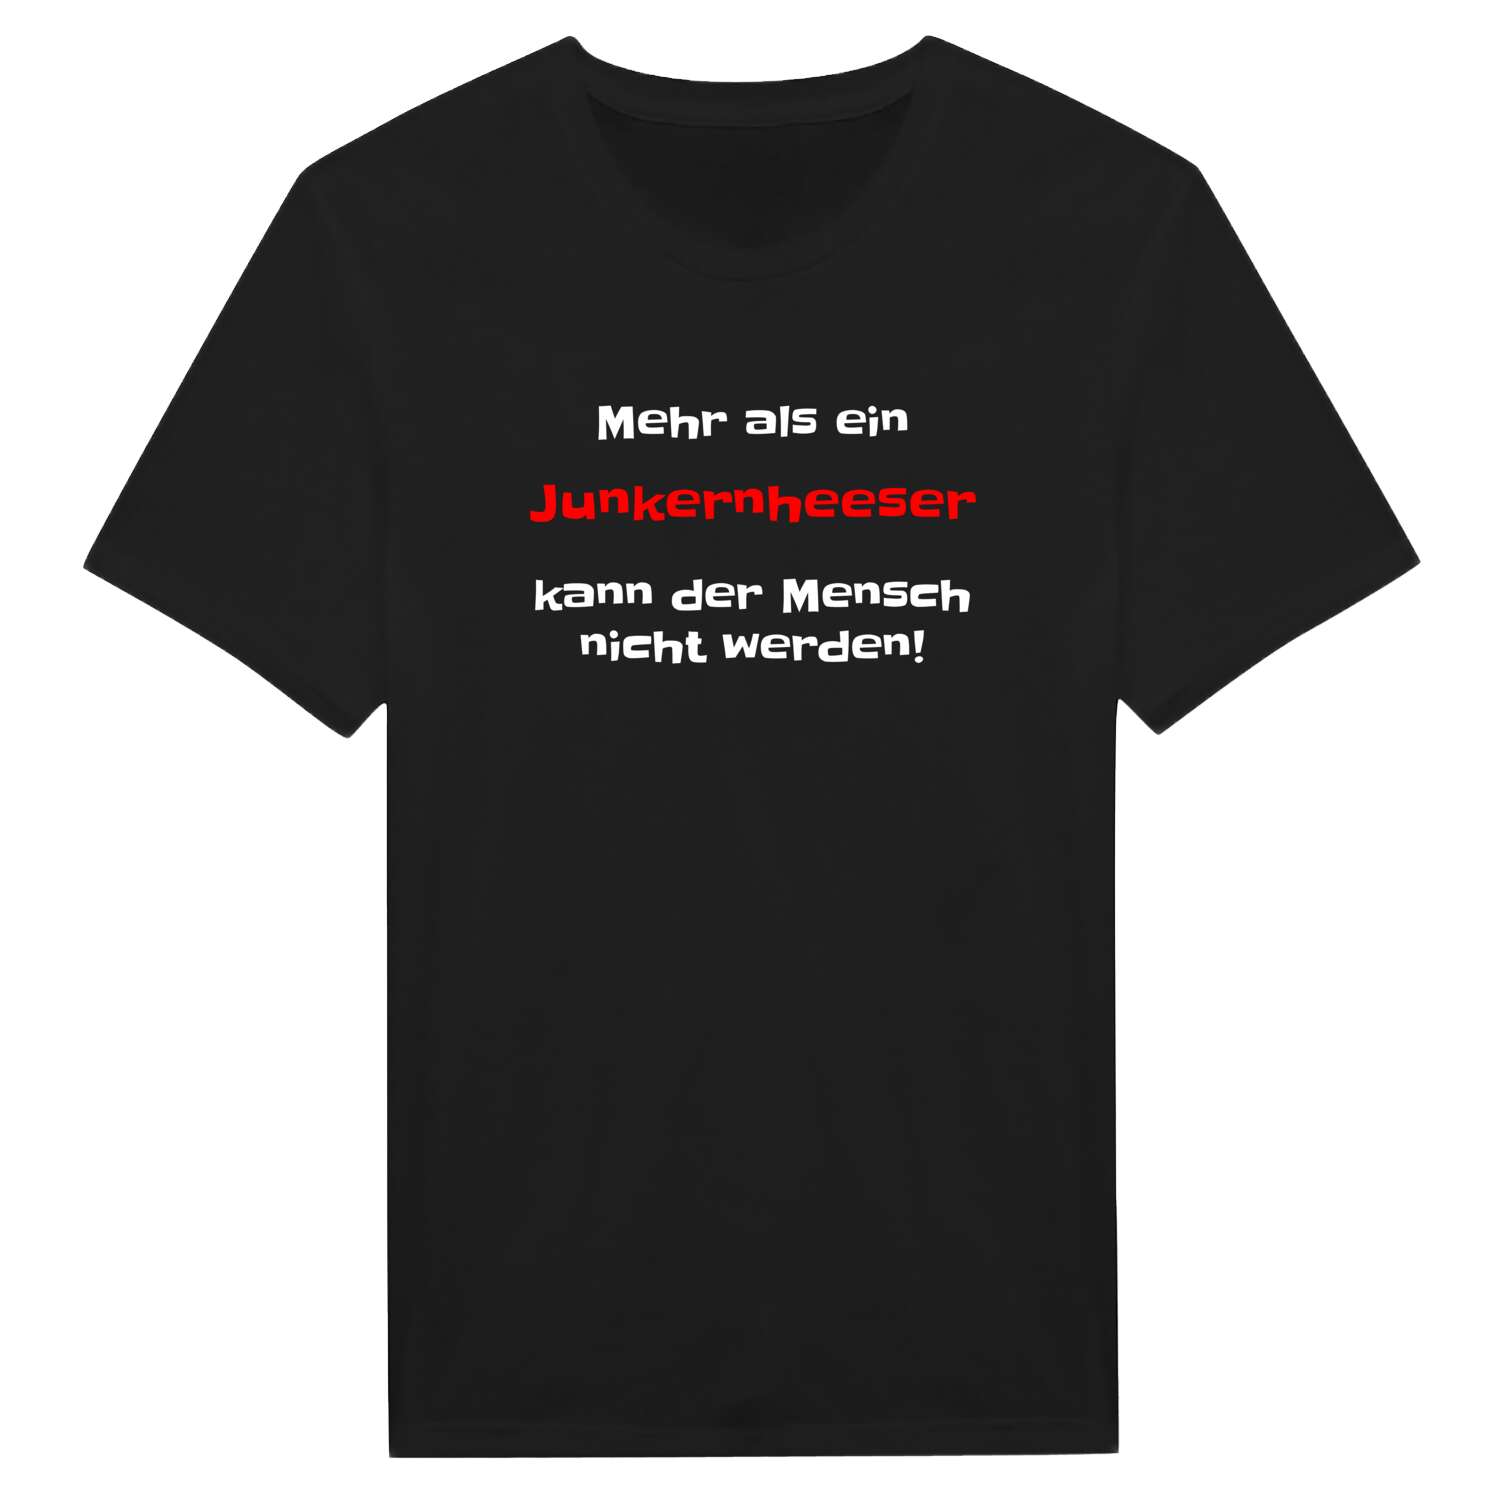 Junkernhees T-Shirt »Mehr als ein«